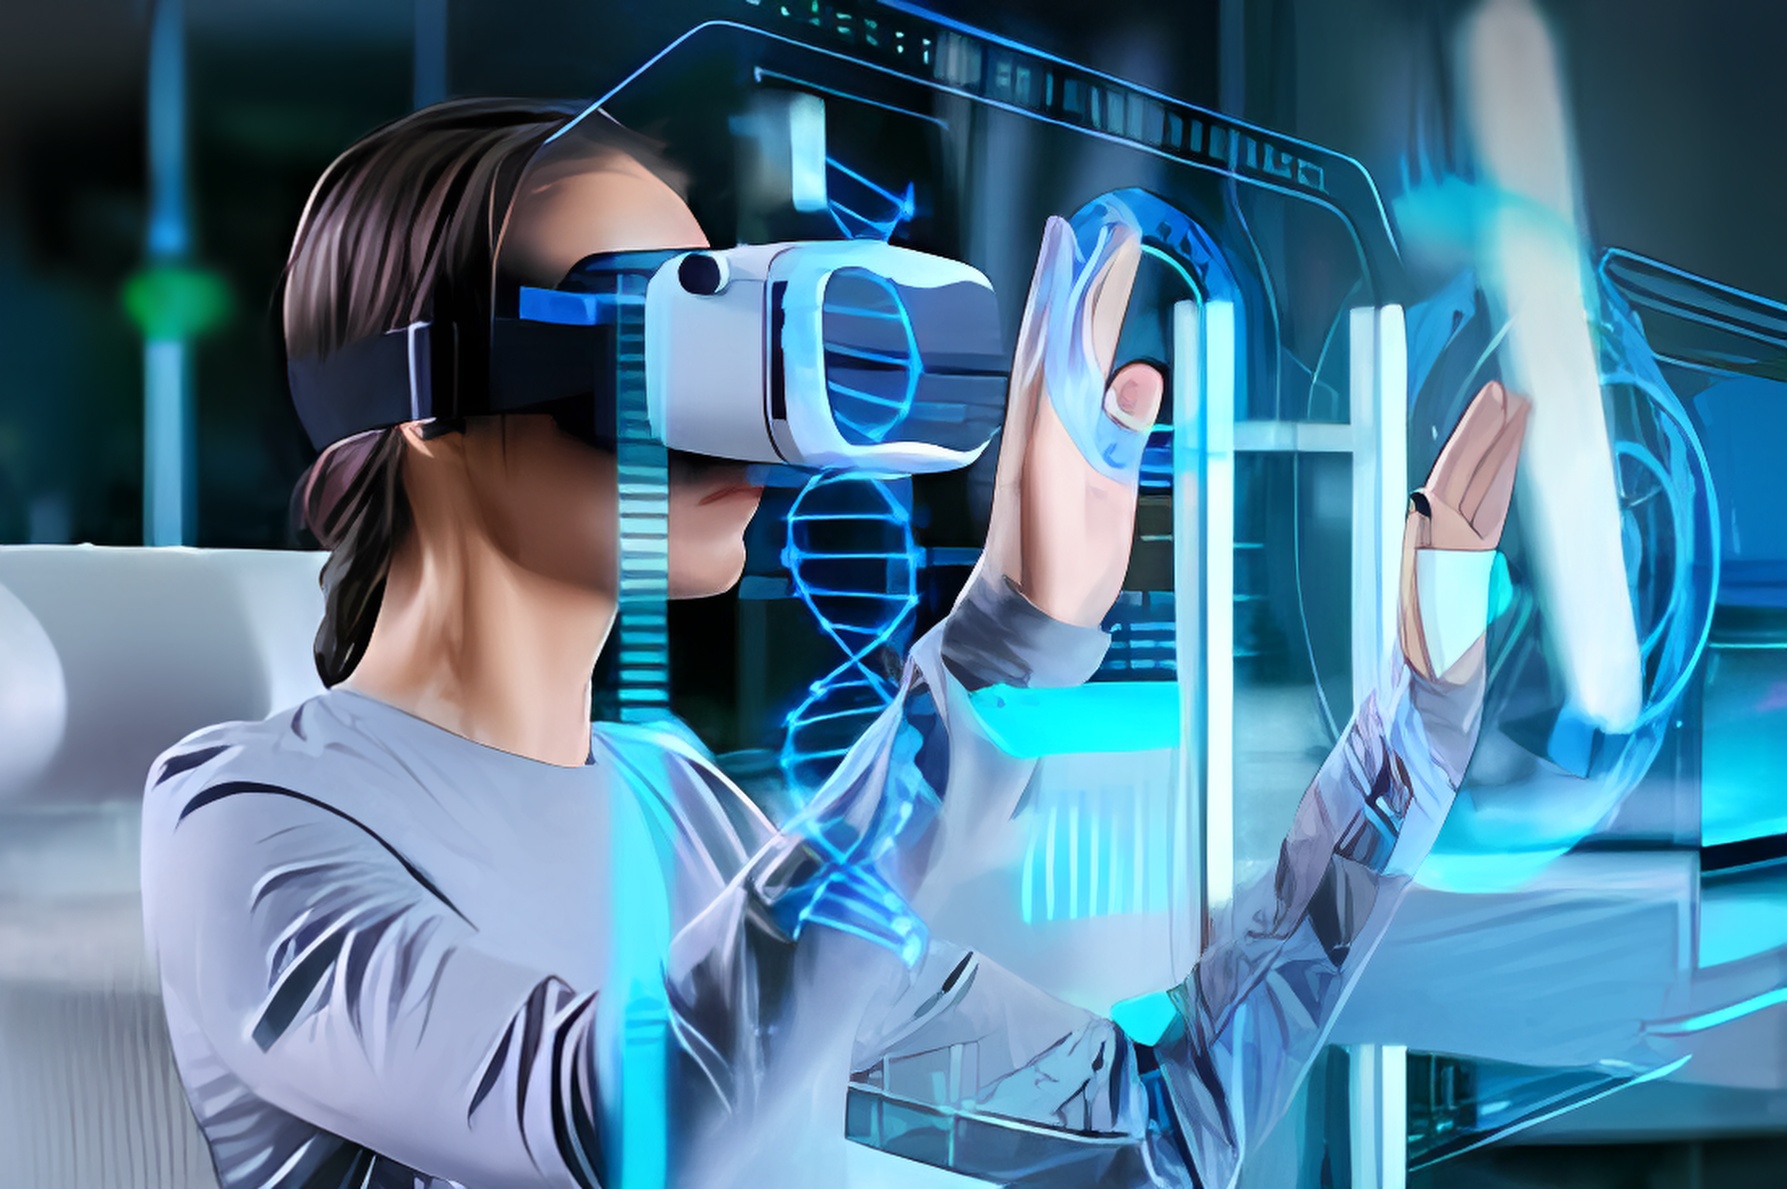 图片展示一位女性戴着虚拟现实头盔，正用手触摸前方虚拟的三维图形界面，体验沉浸式科技互动。